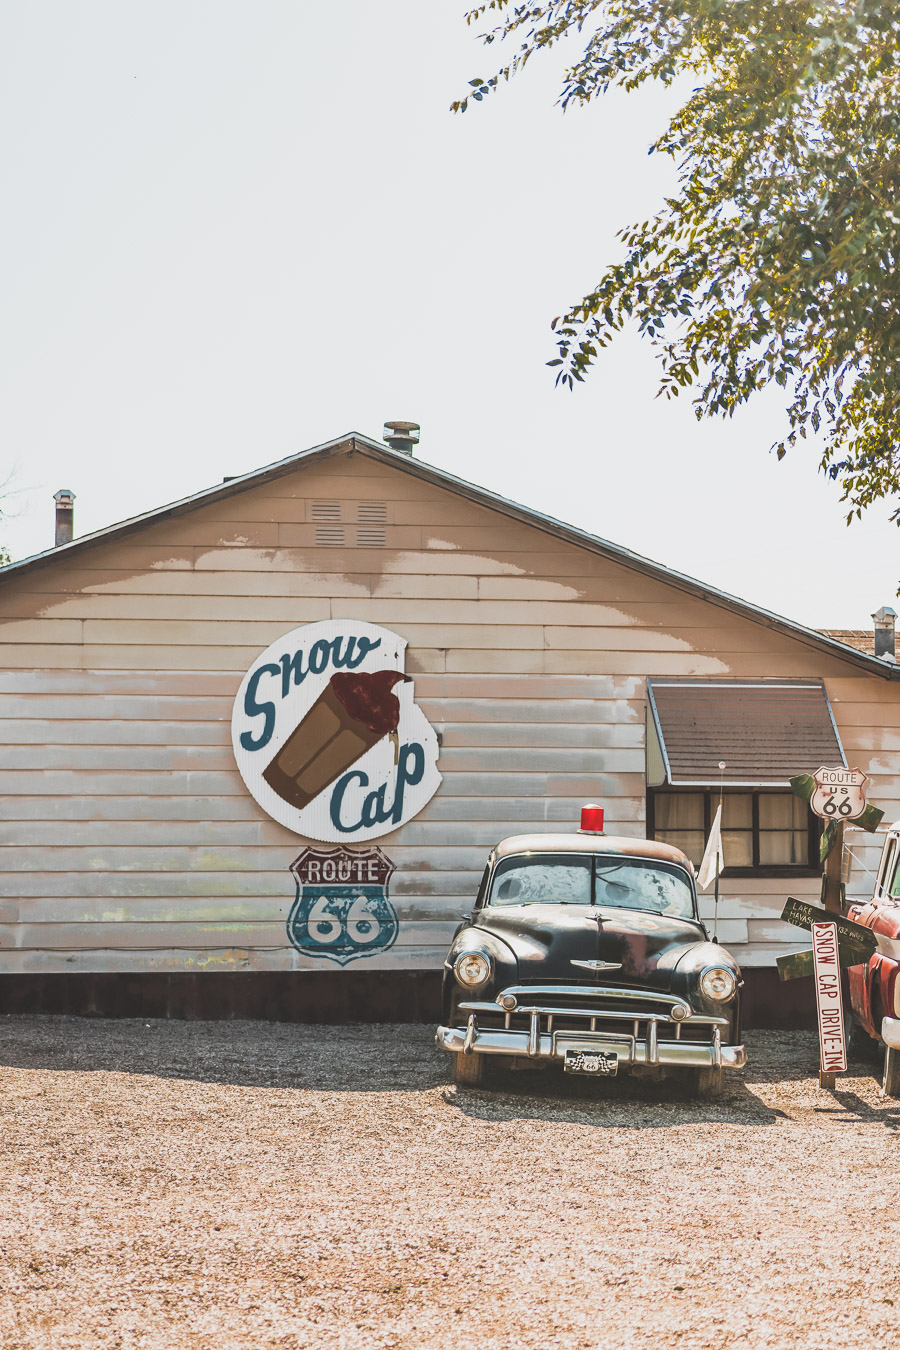 Faites un voyage sur la Route 66 en van - l'une des routes les plus emblématiques de l'histoire américaine ! Du Midwest au Sud-Ouest, la Route 66 est un symbole d'aventure et de liberté depuis des générations, offrant une expérience de voyage unique et inoubliable. Les voyageurs peuvent découvrir sa culture diversifiée et ses joyaux cachés. Que vous recherchiez un long voyage en voiture ou en van ou une escapade rapide, la Route 66 est une idée originale pour un voyage en été.